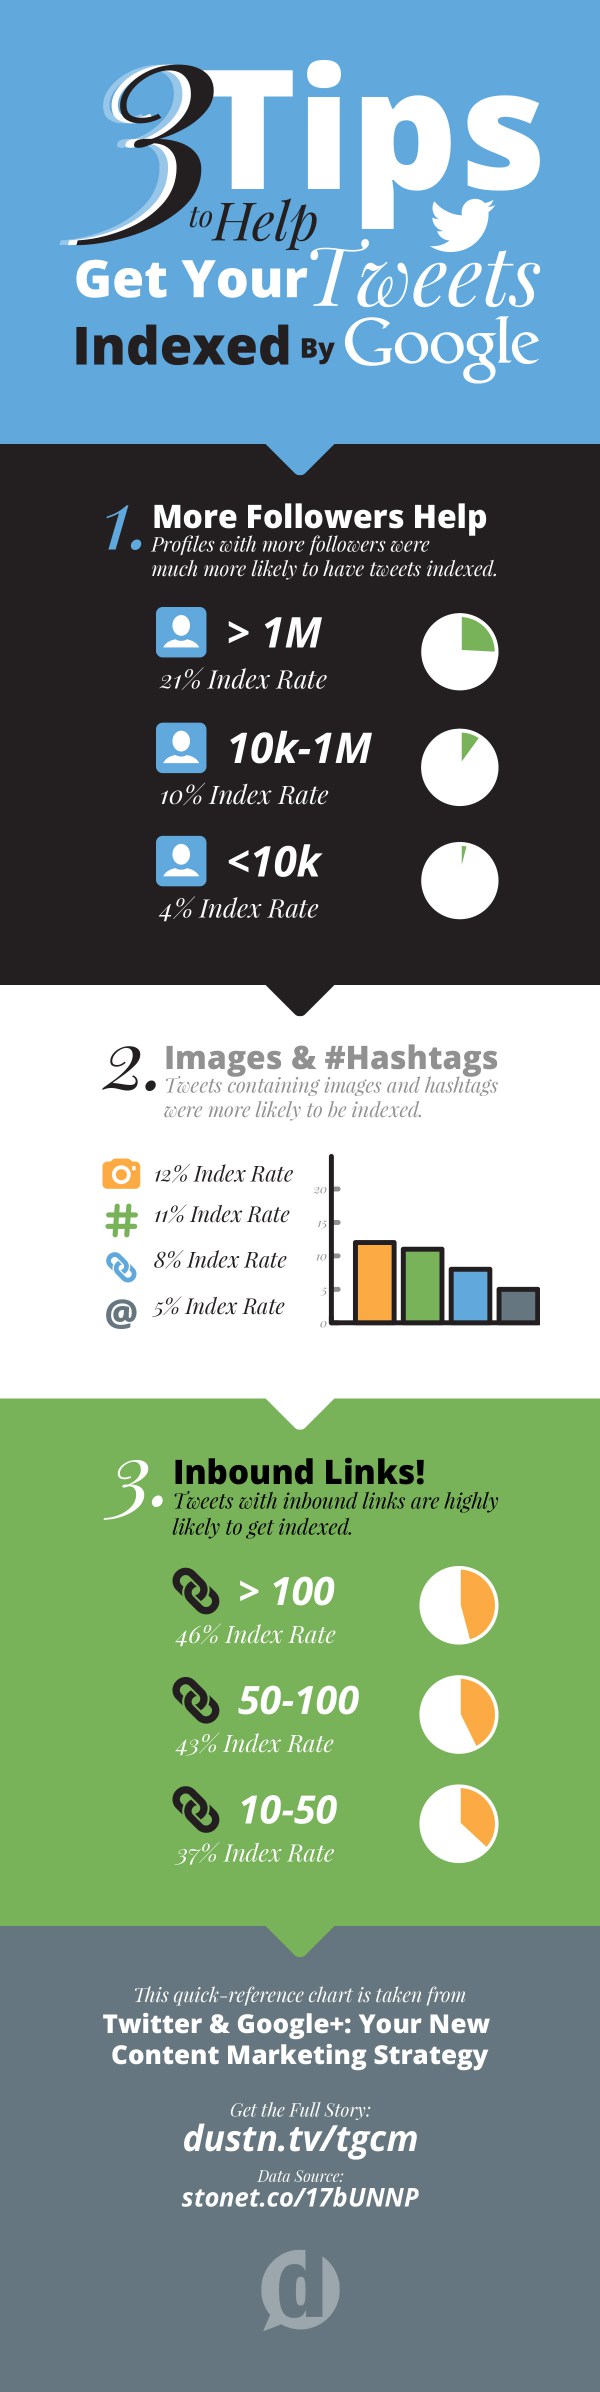 get-tweets-indexed-tips-infographic